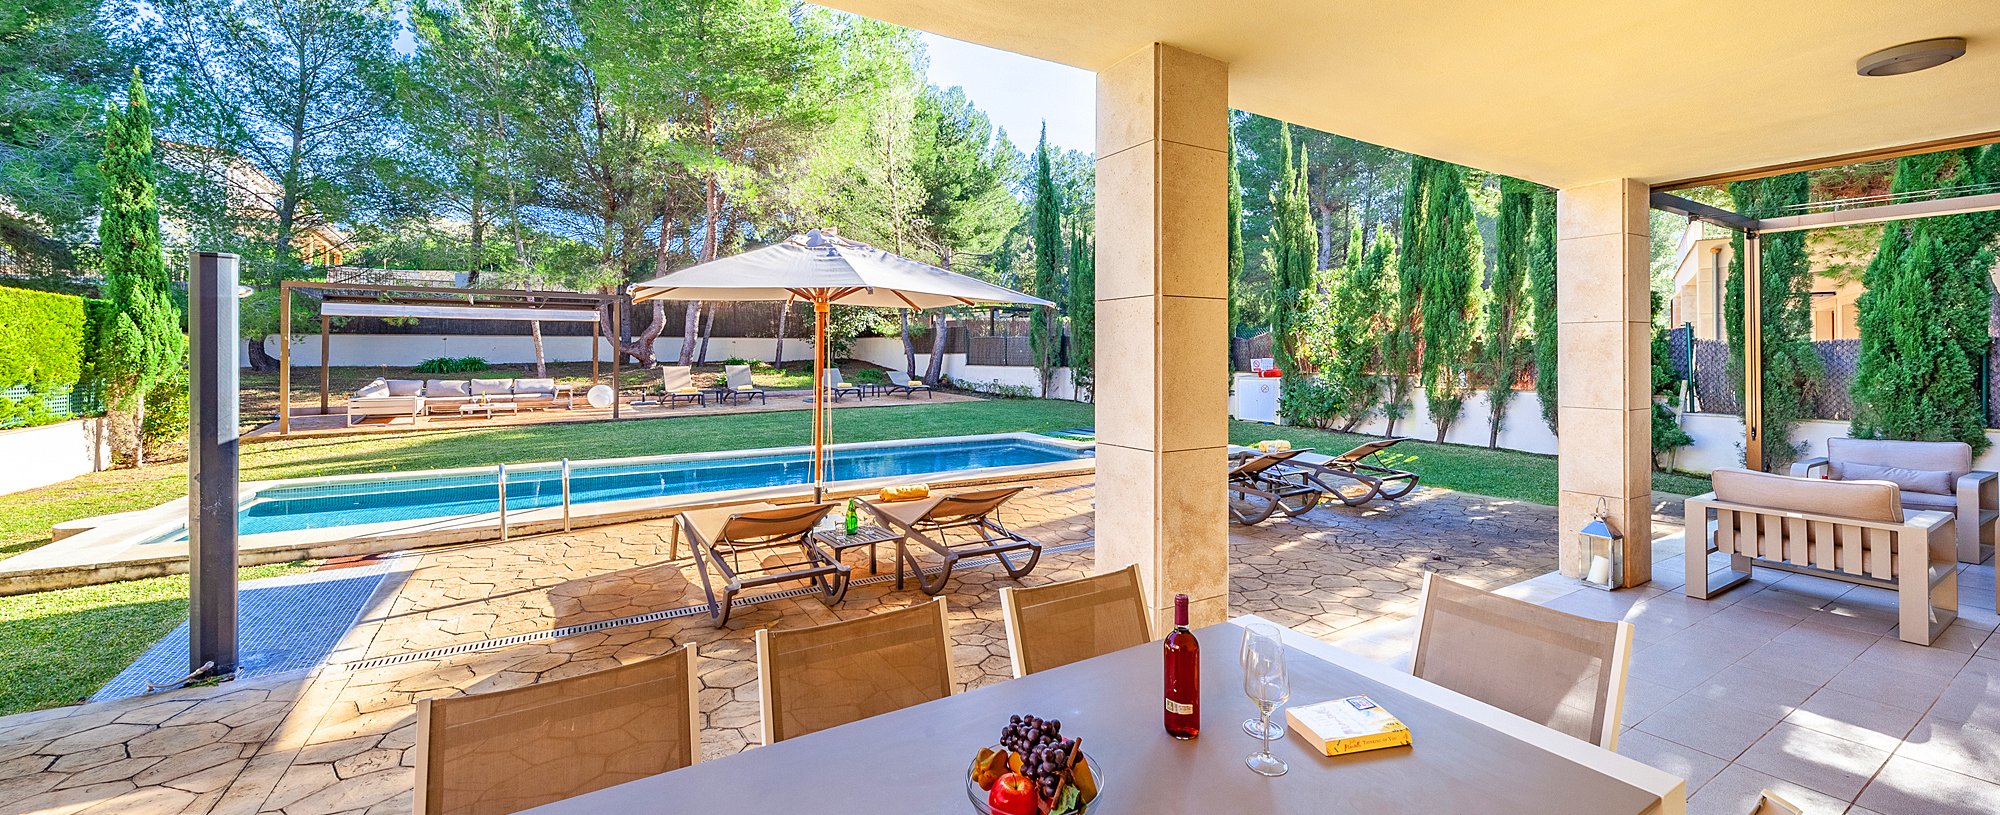 Ferienhaus auf Mallorca strandnah und mit Pool für 6 Personen mieten.